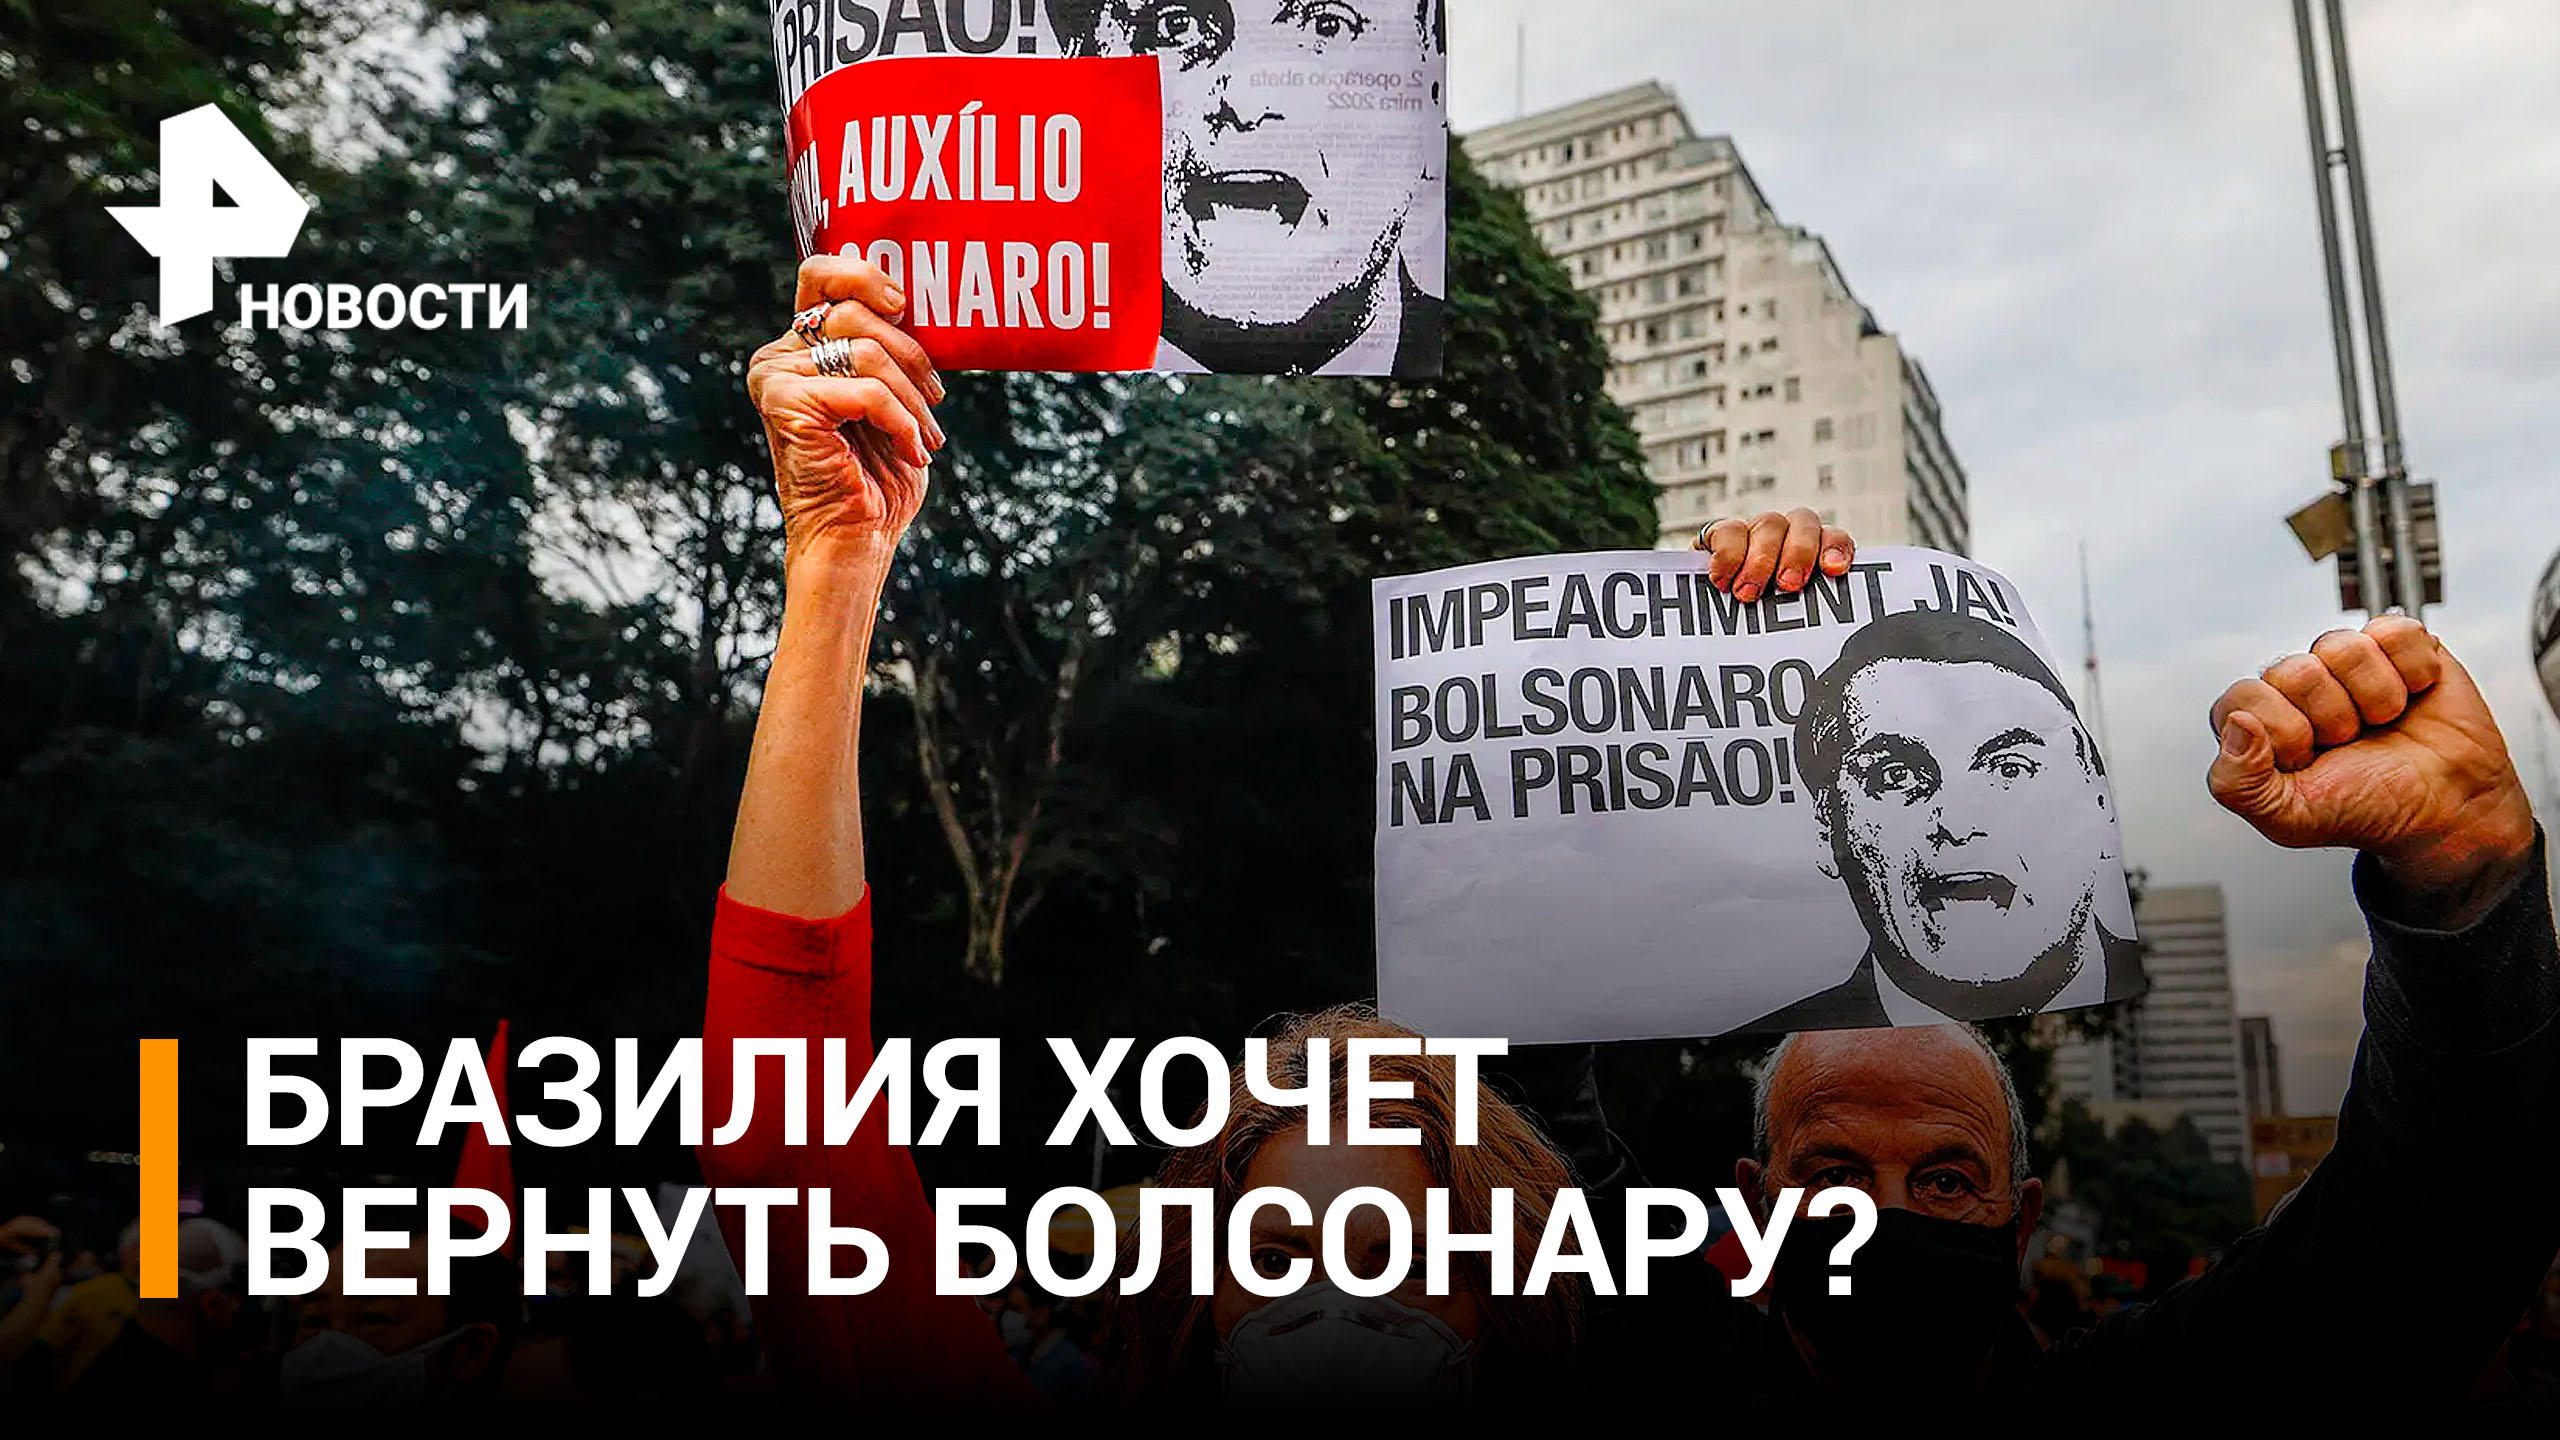 Сторонники Болсонару вышли на массовые протесты  / РЕН Новости